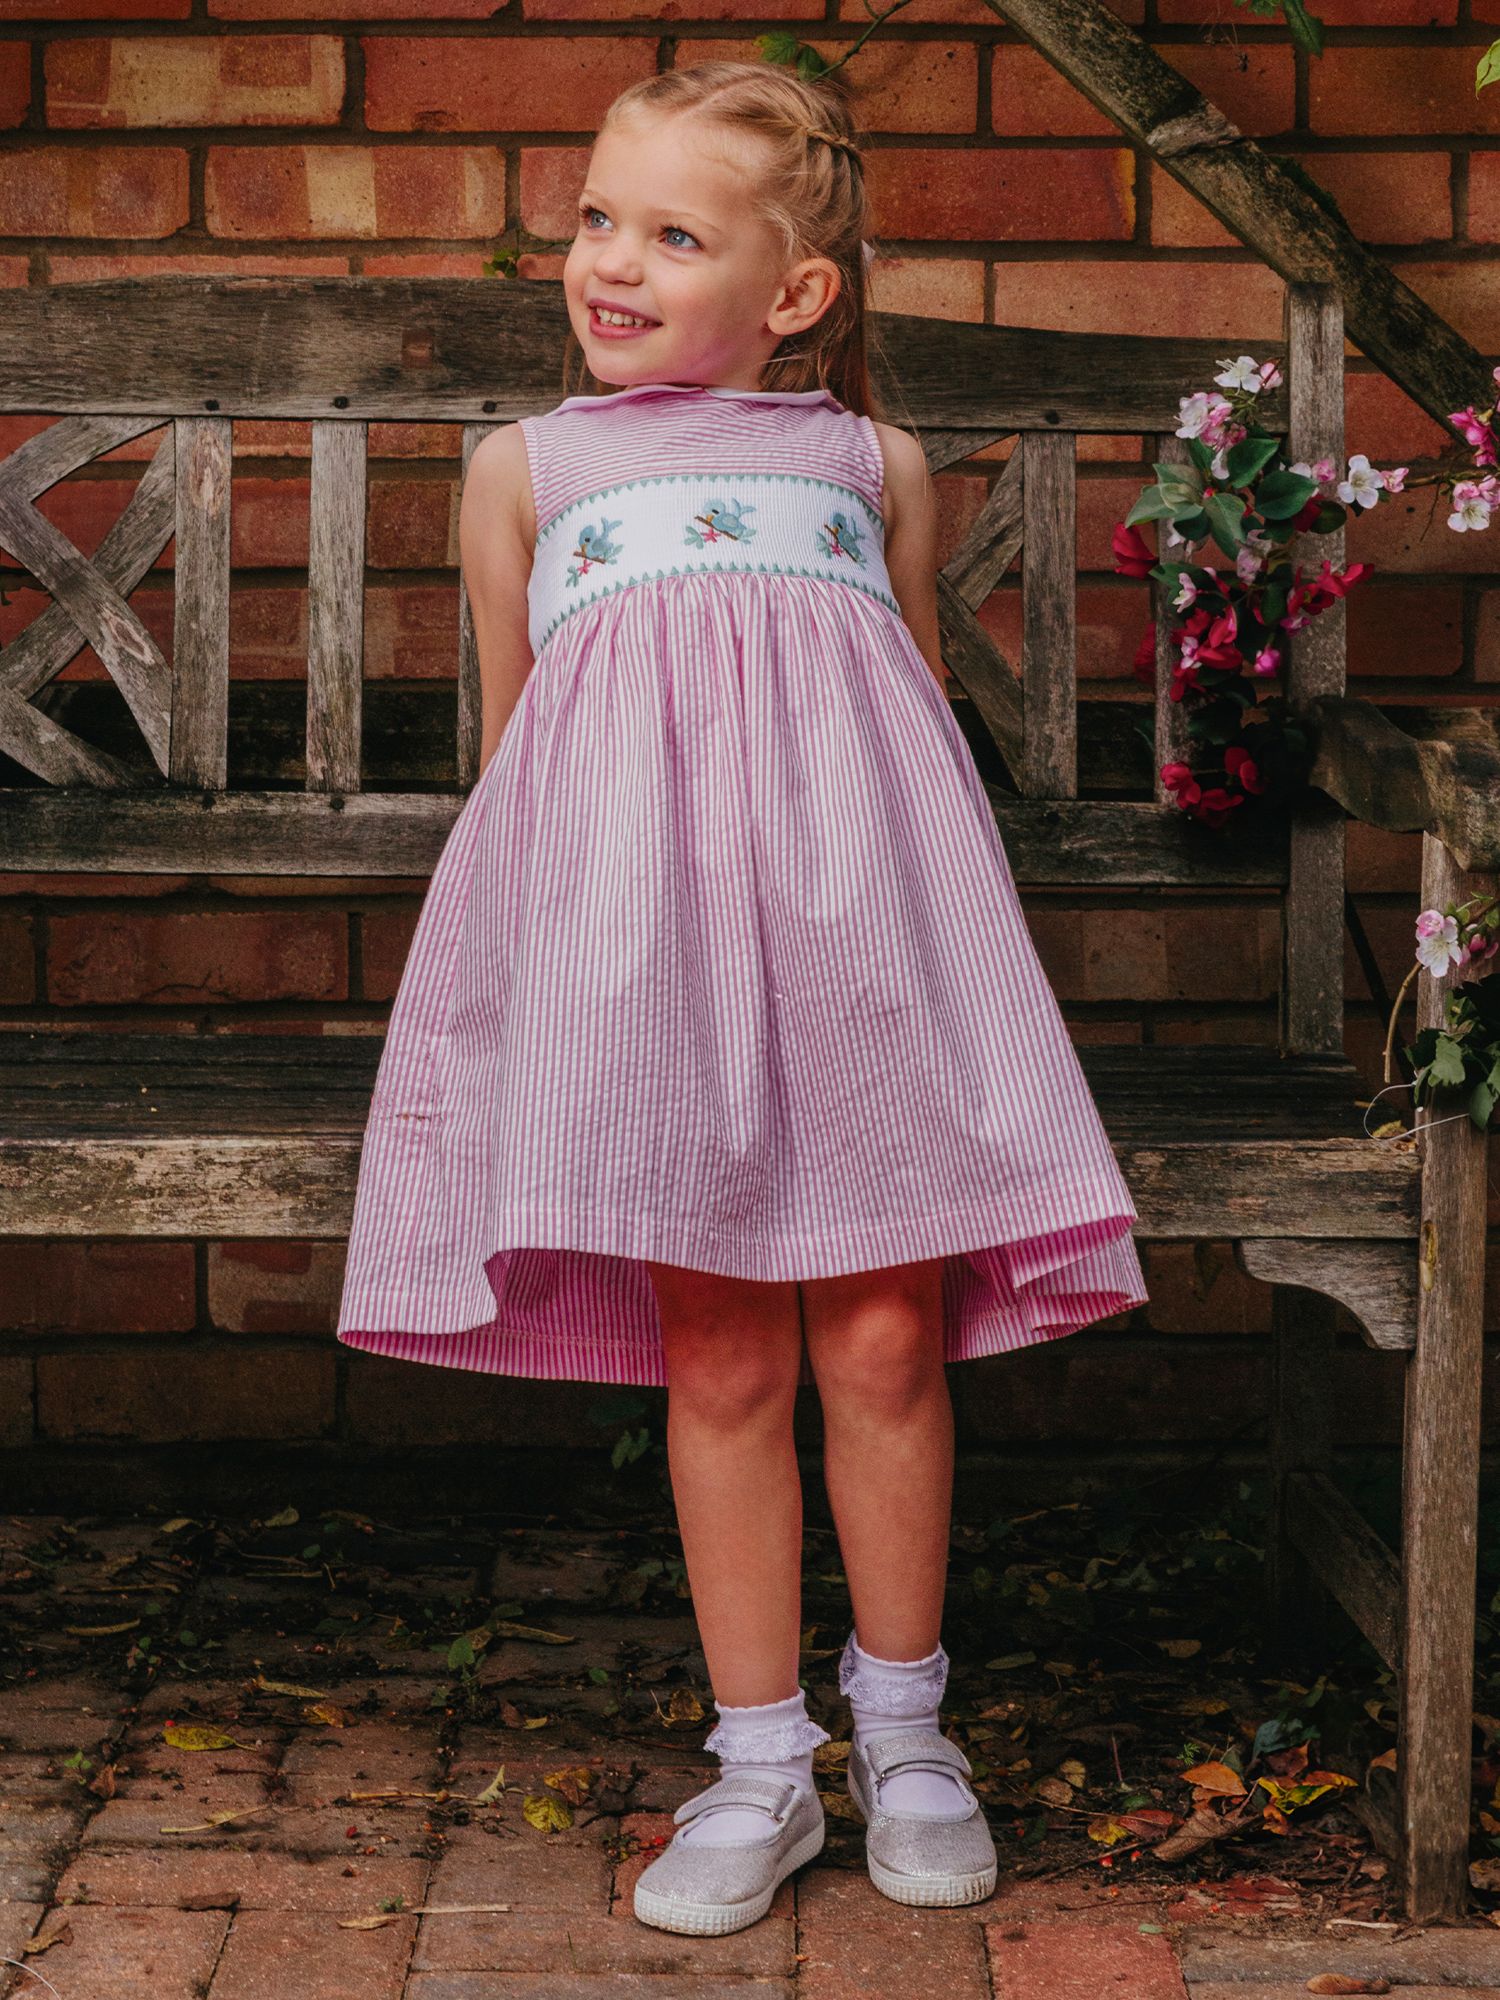 Buy Trotters Kids' Tweetie Bird Smocked Stripe Dress, Pink Online at johnlewis.com